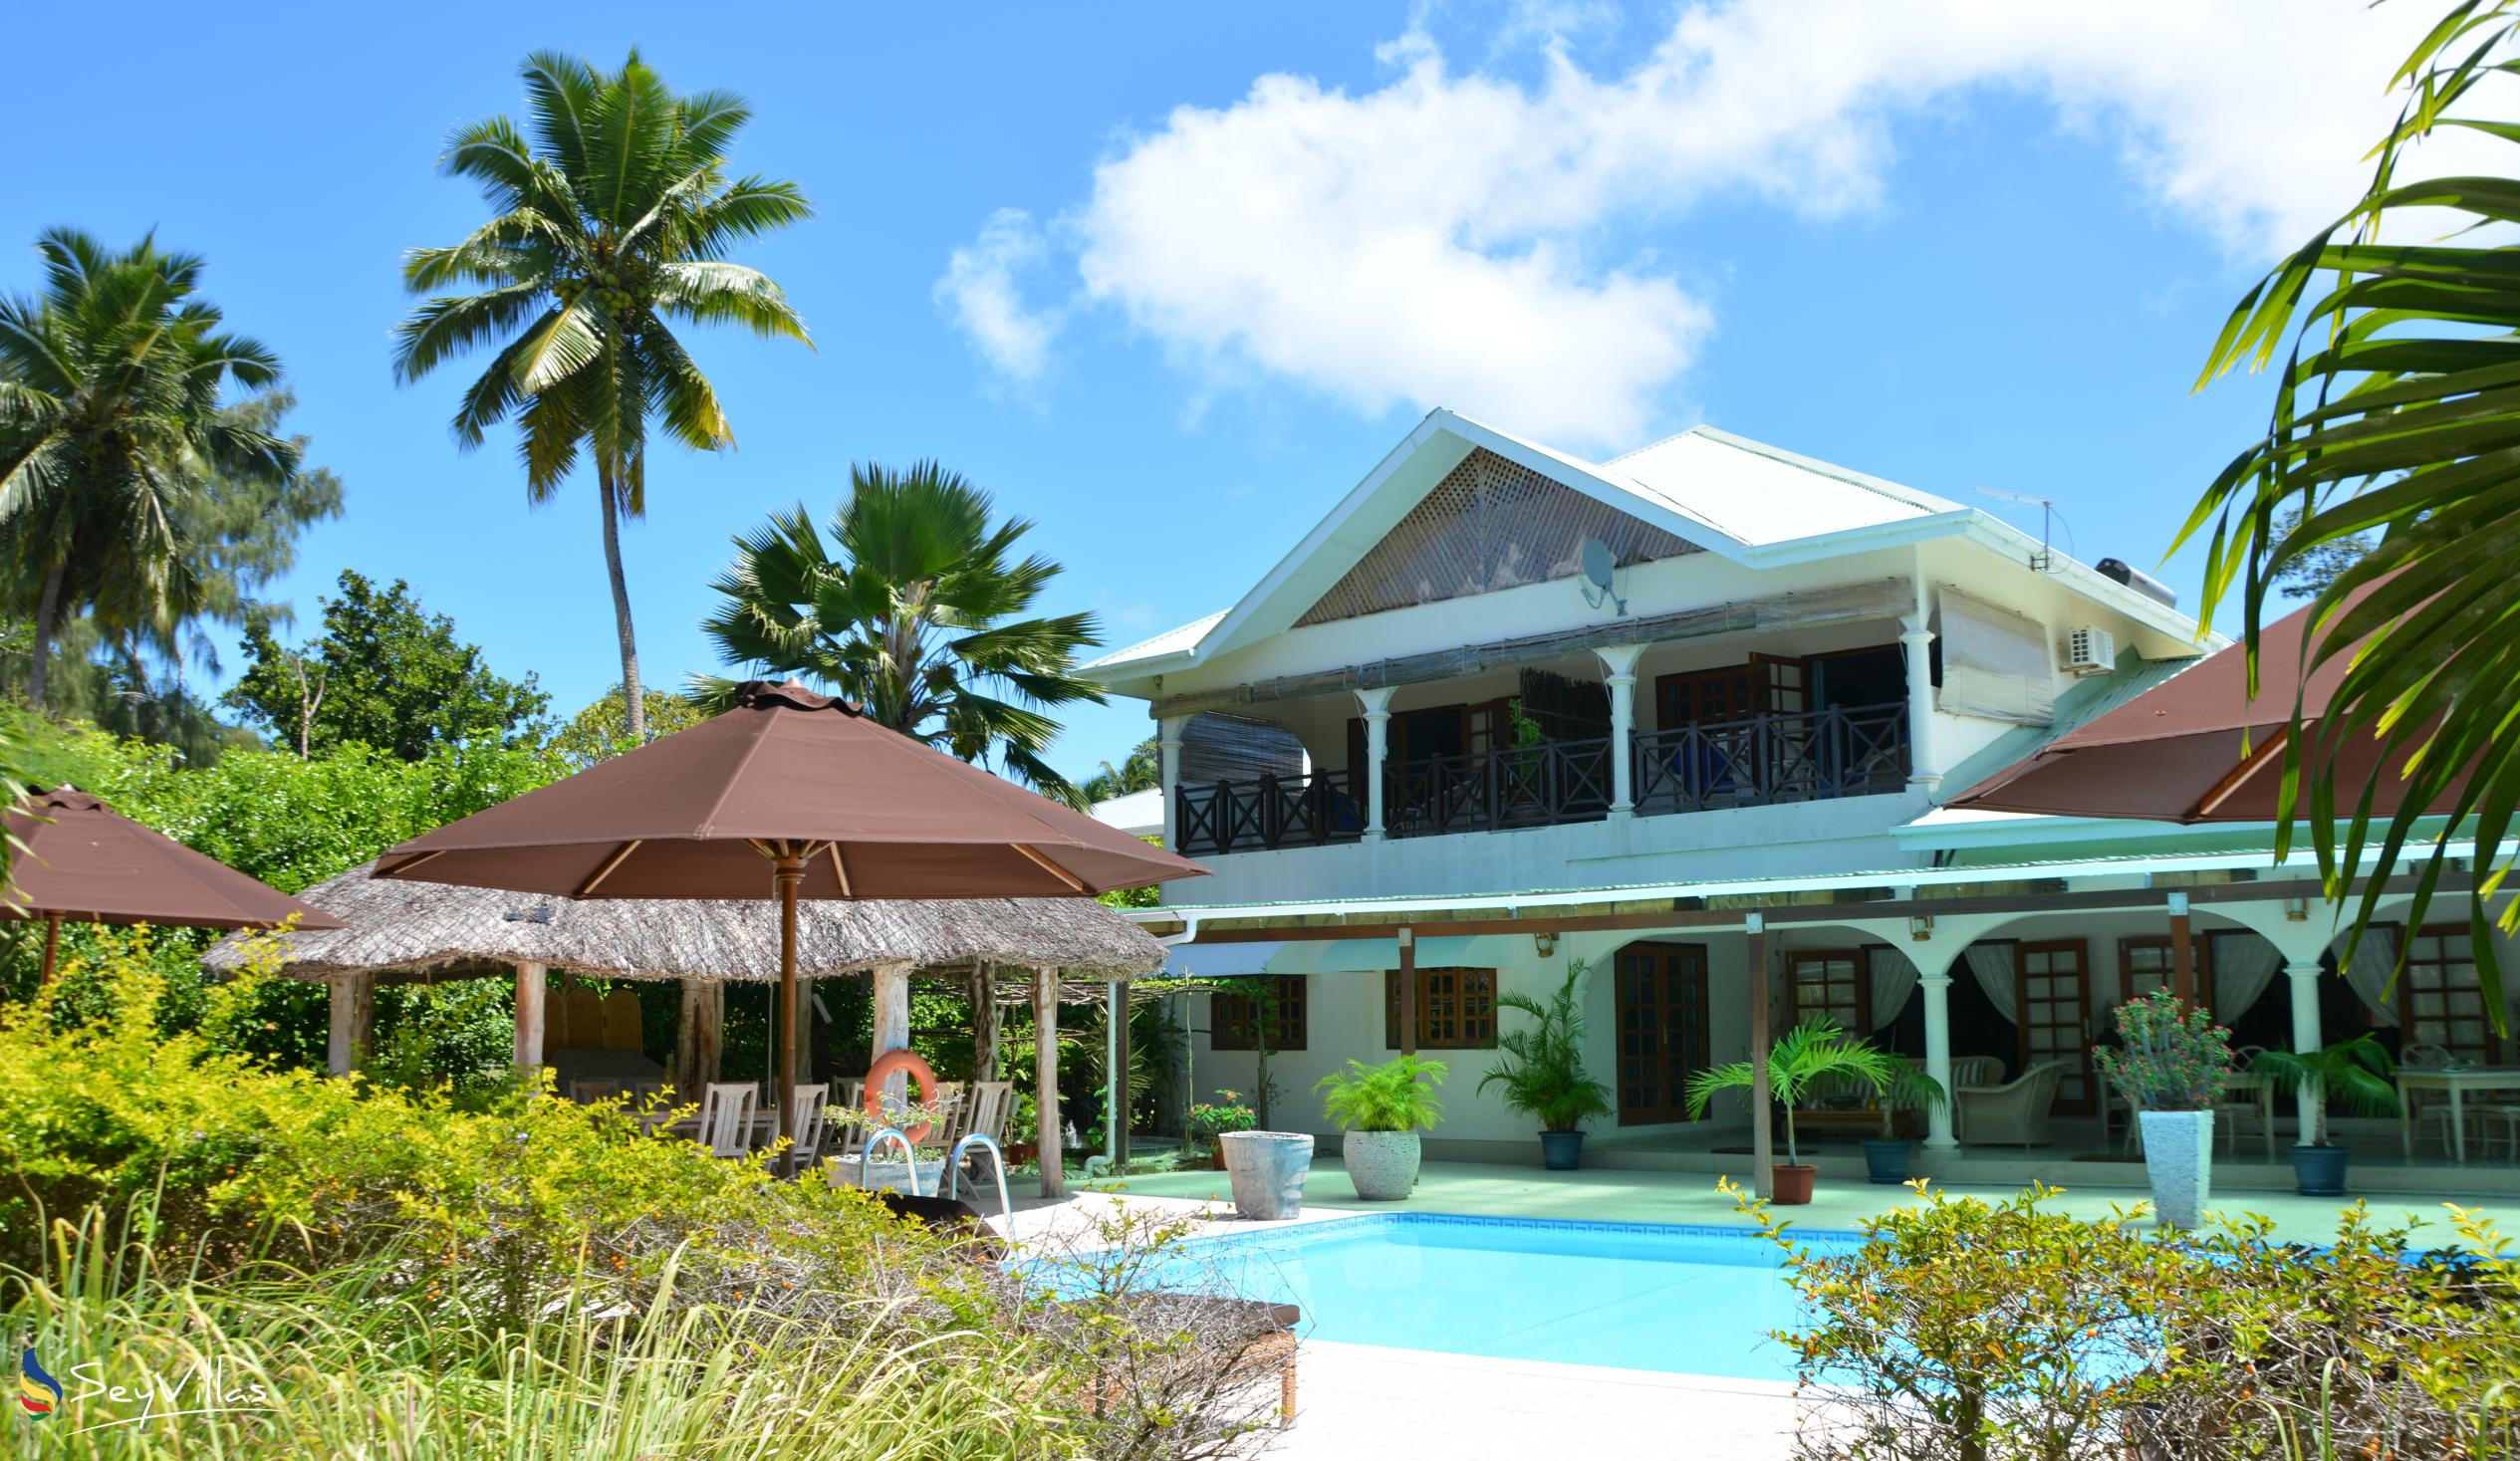 Foto 1: Villa de Cerf - Esterno - Cerf Island (Seychelles)